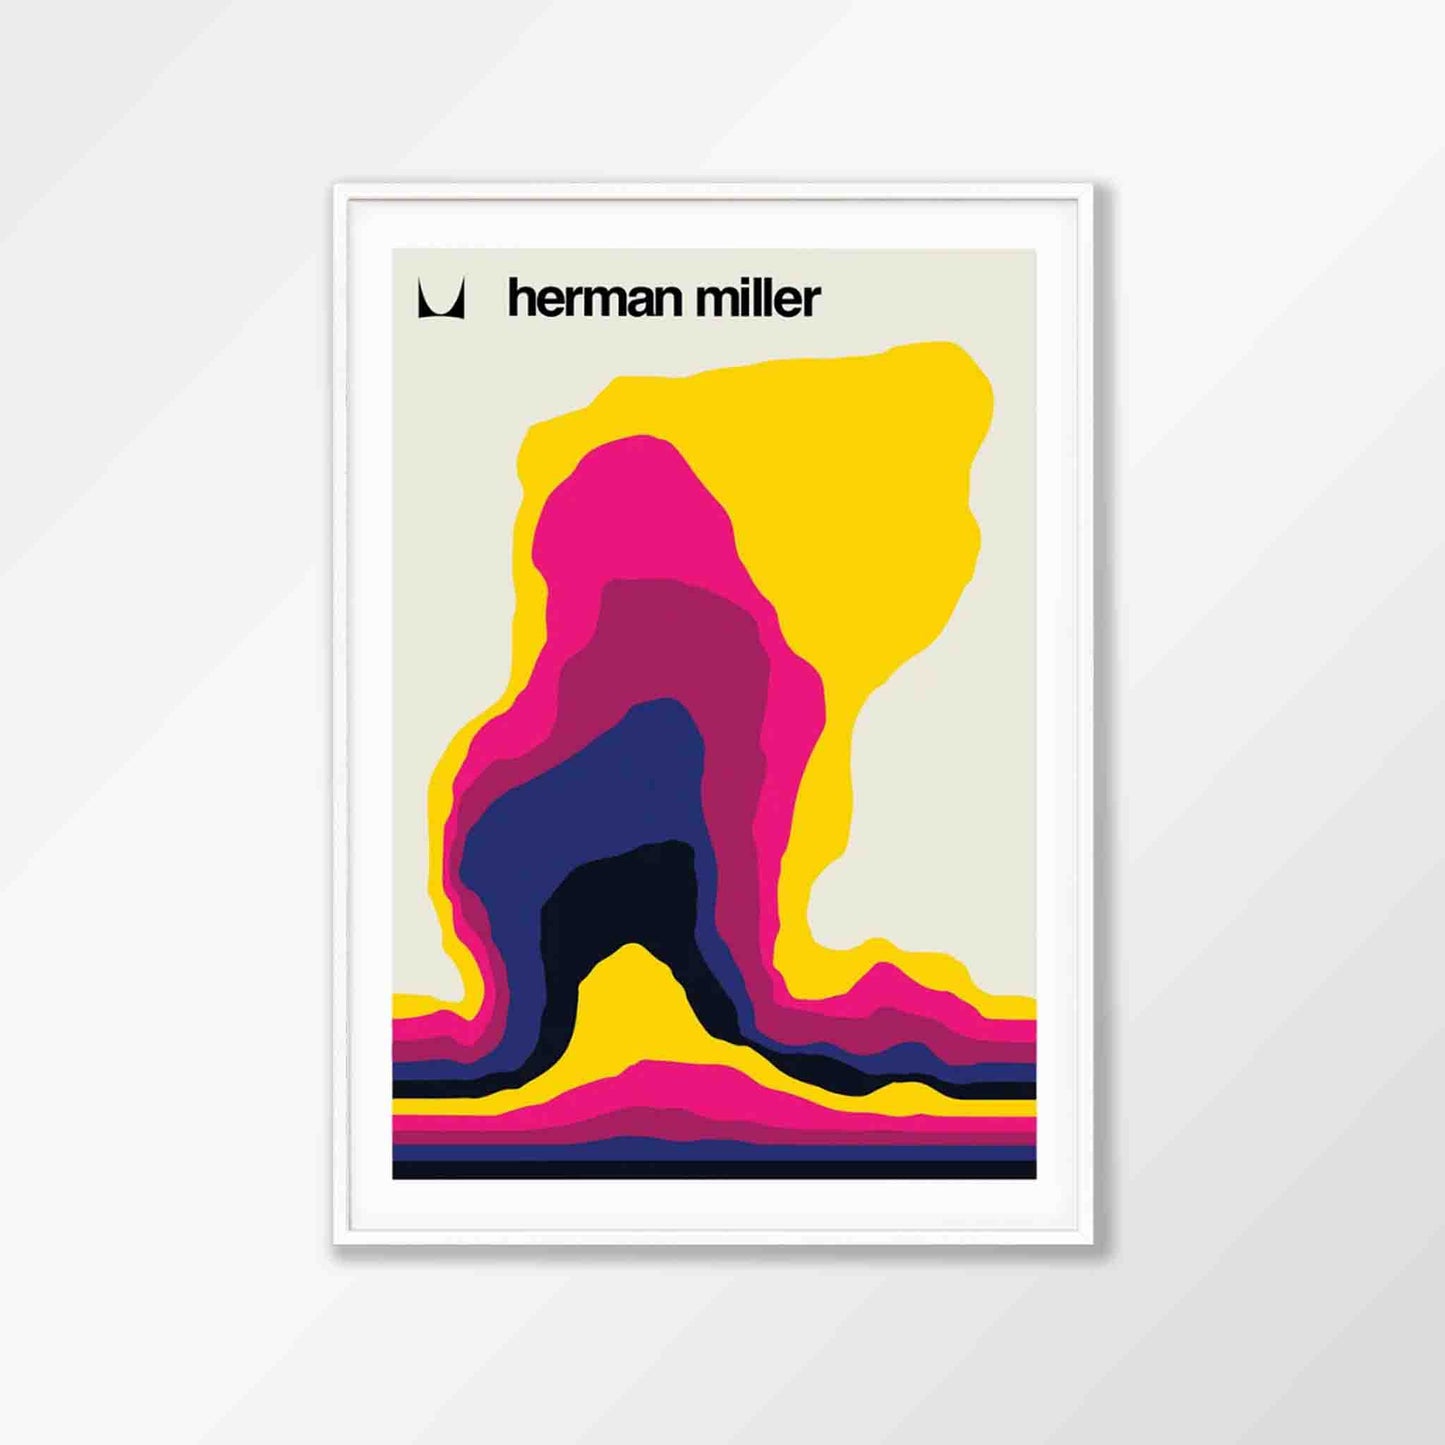 Herman Miller Exhibition